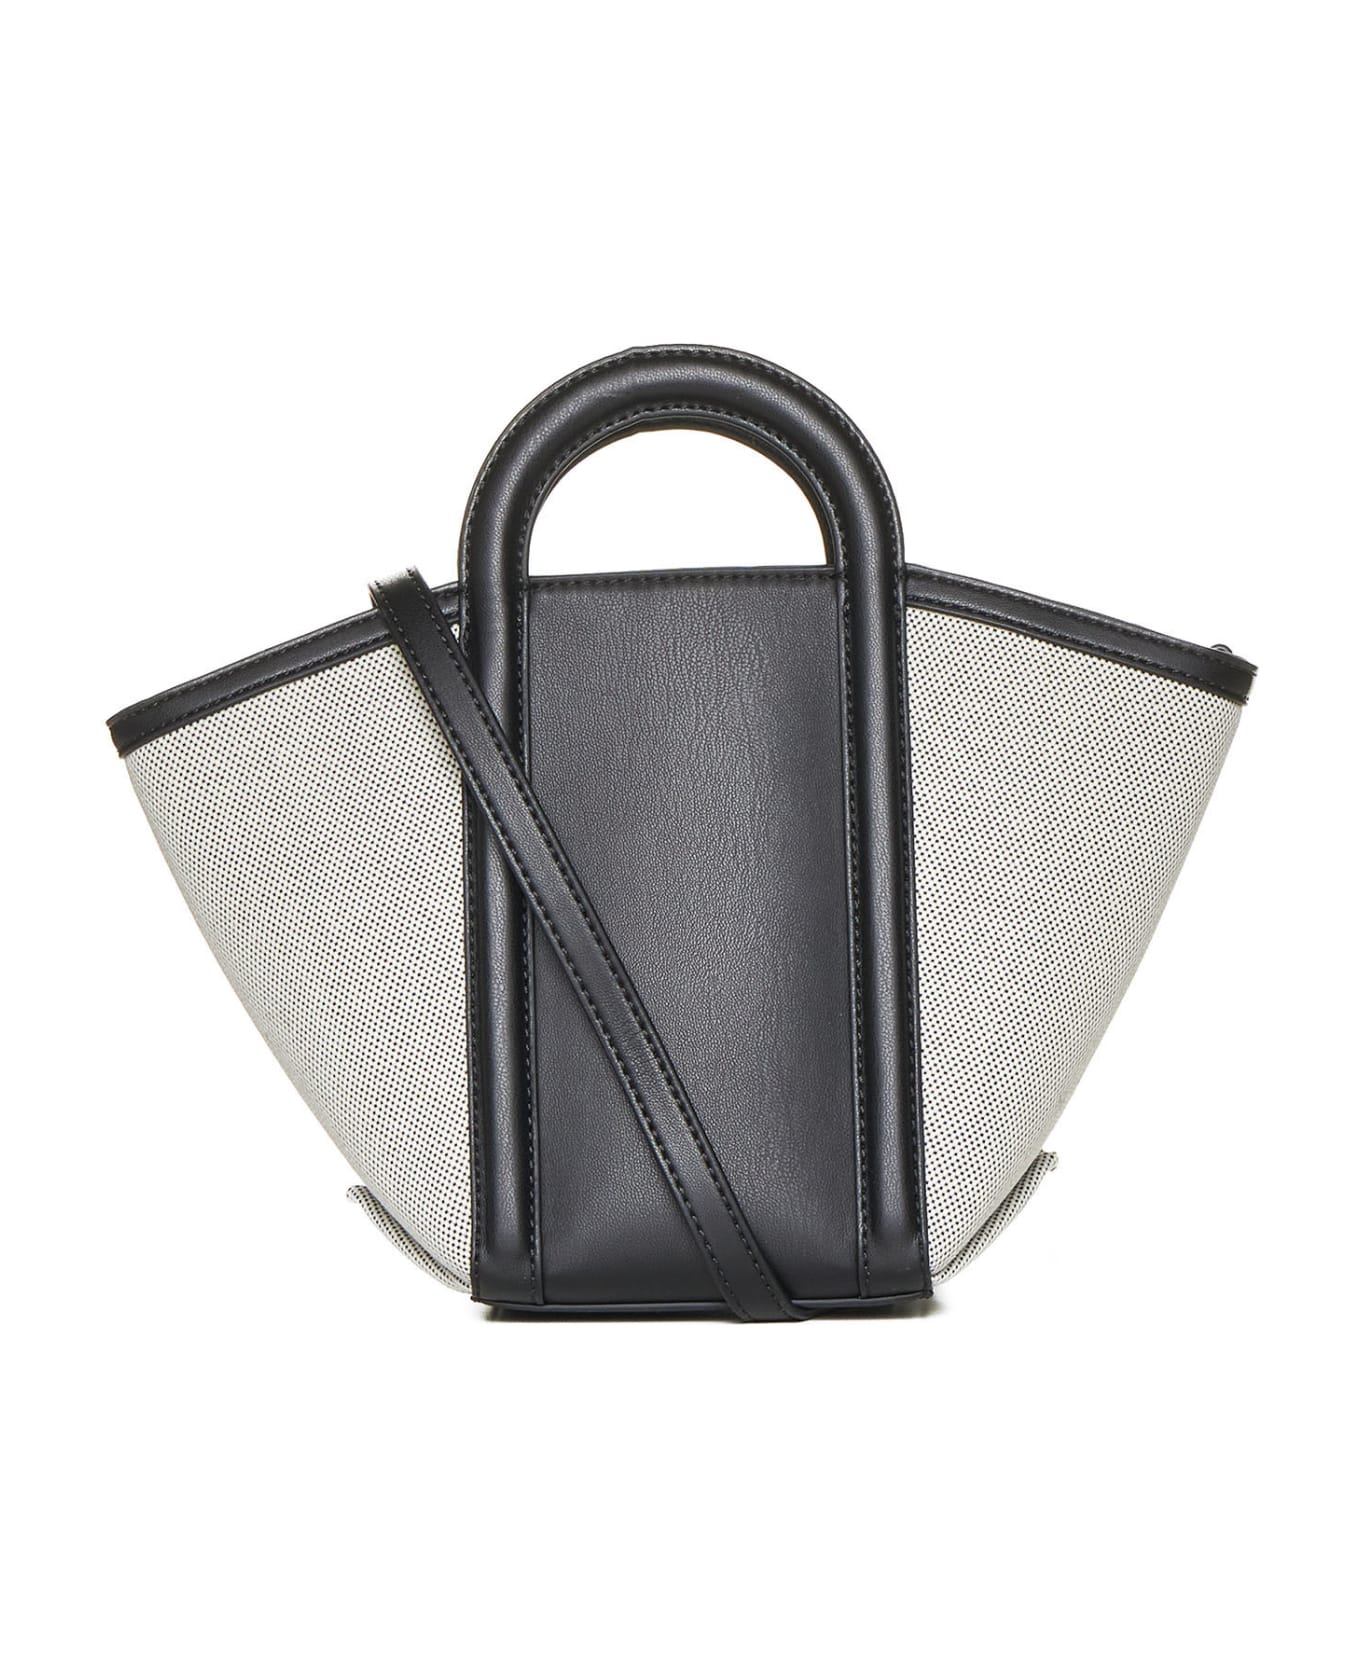 DKNY Shoulder Bag - Black/natural